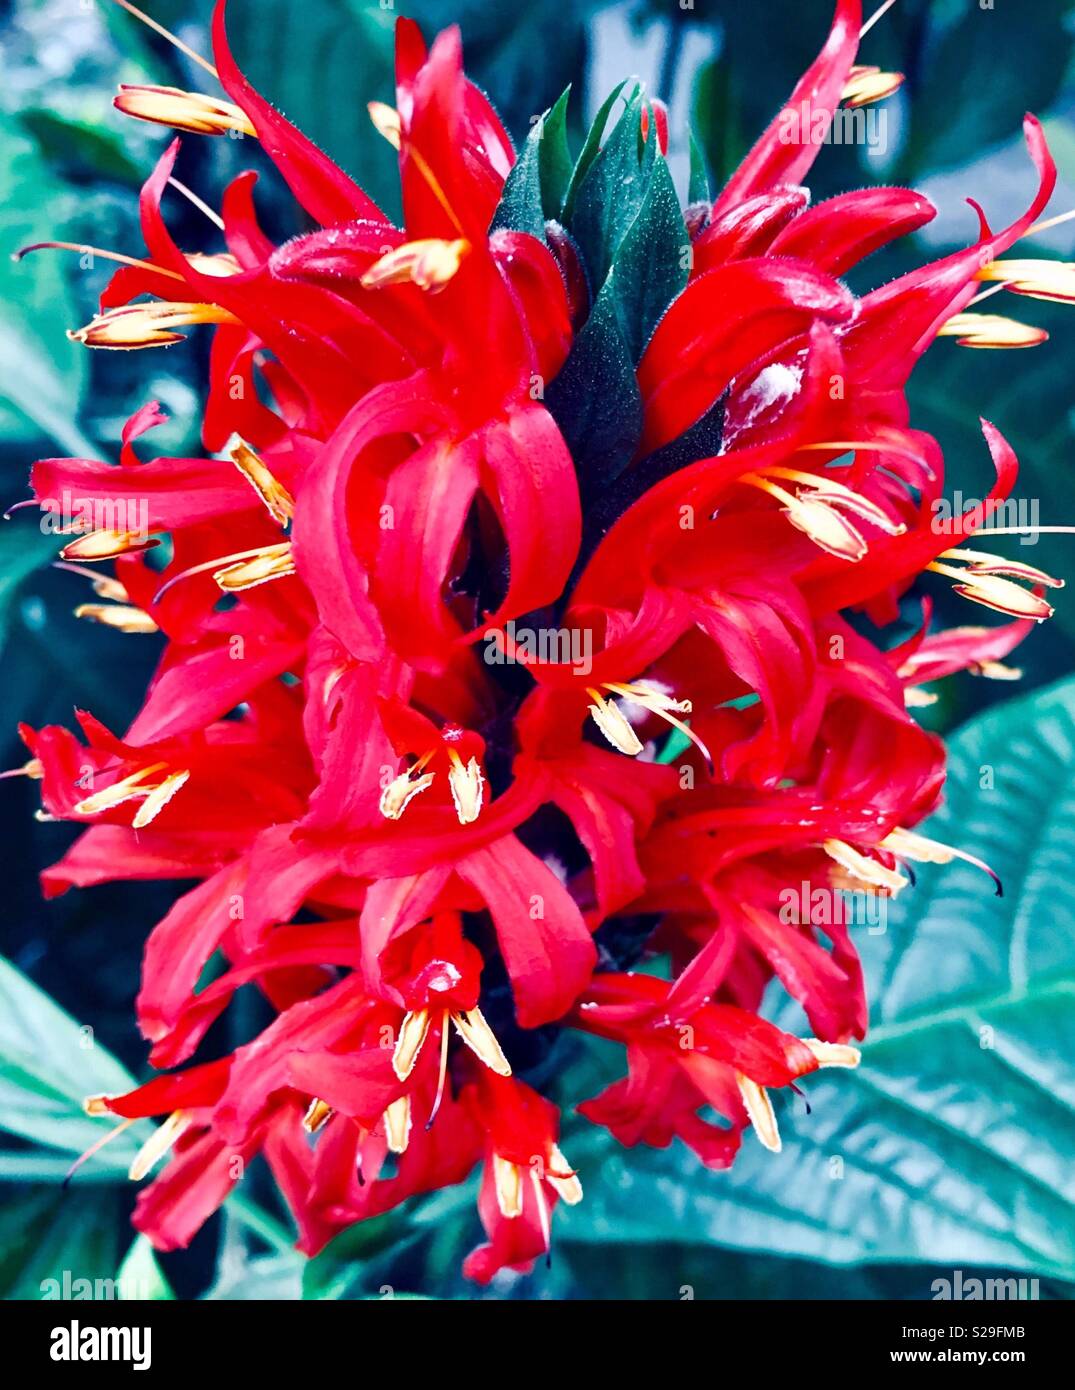 Tallo de flores pequeñas de color rojo brillante con hojas verdes en segundo plano. Foto de stock